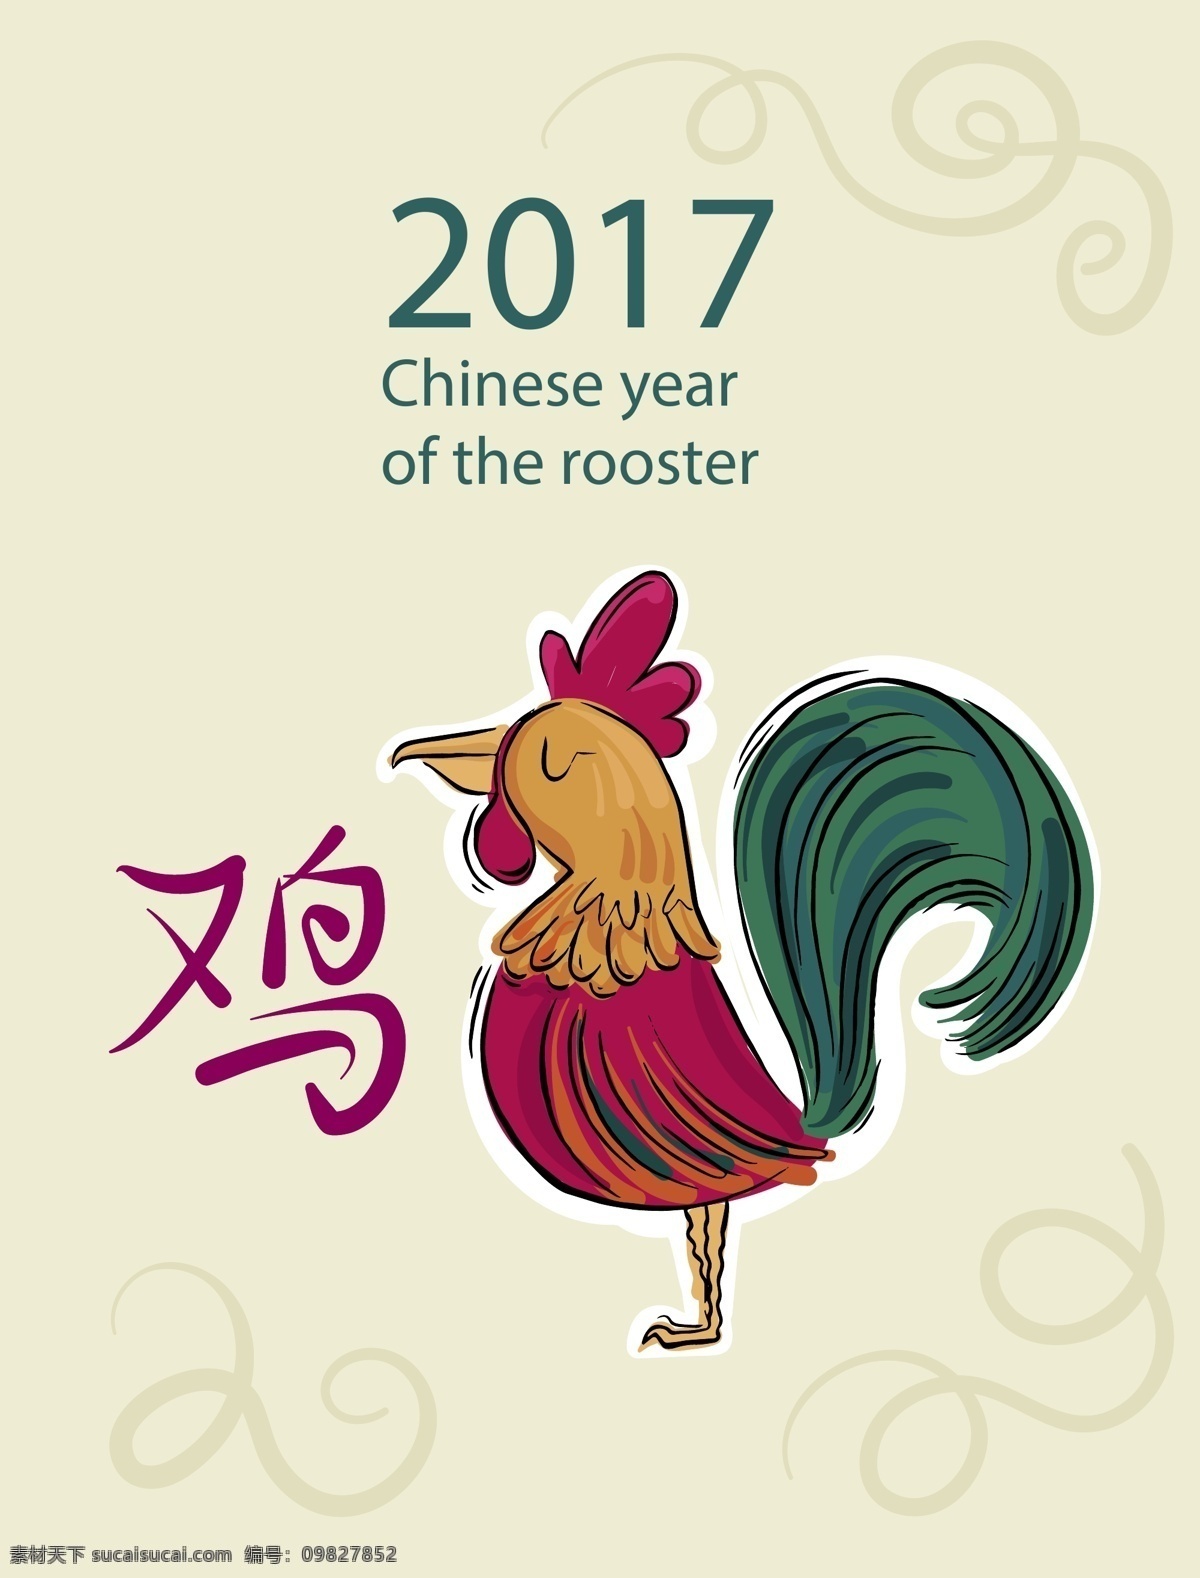 矢量 复古 手绘 鸡年 背景 2017年 大公鸡 海报